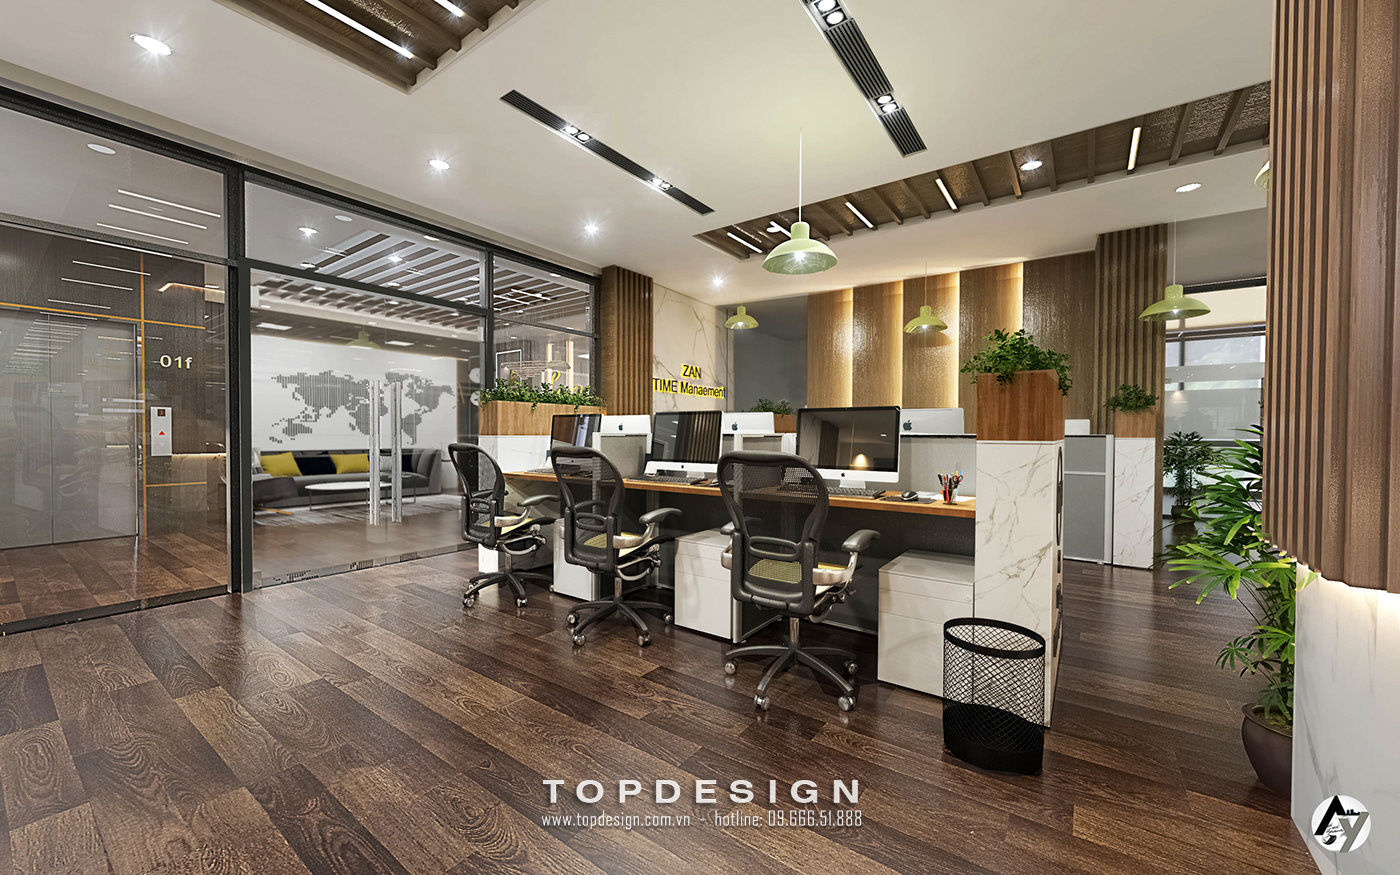 4.thiết kế văn phòng nổi bật, sáng tạo_TOPDESIGN